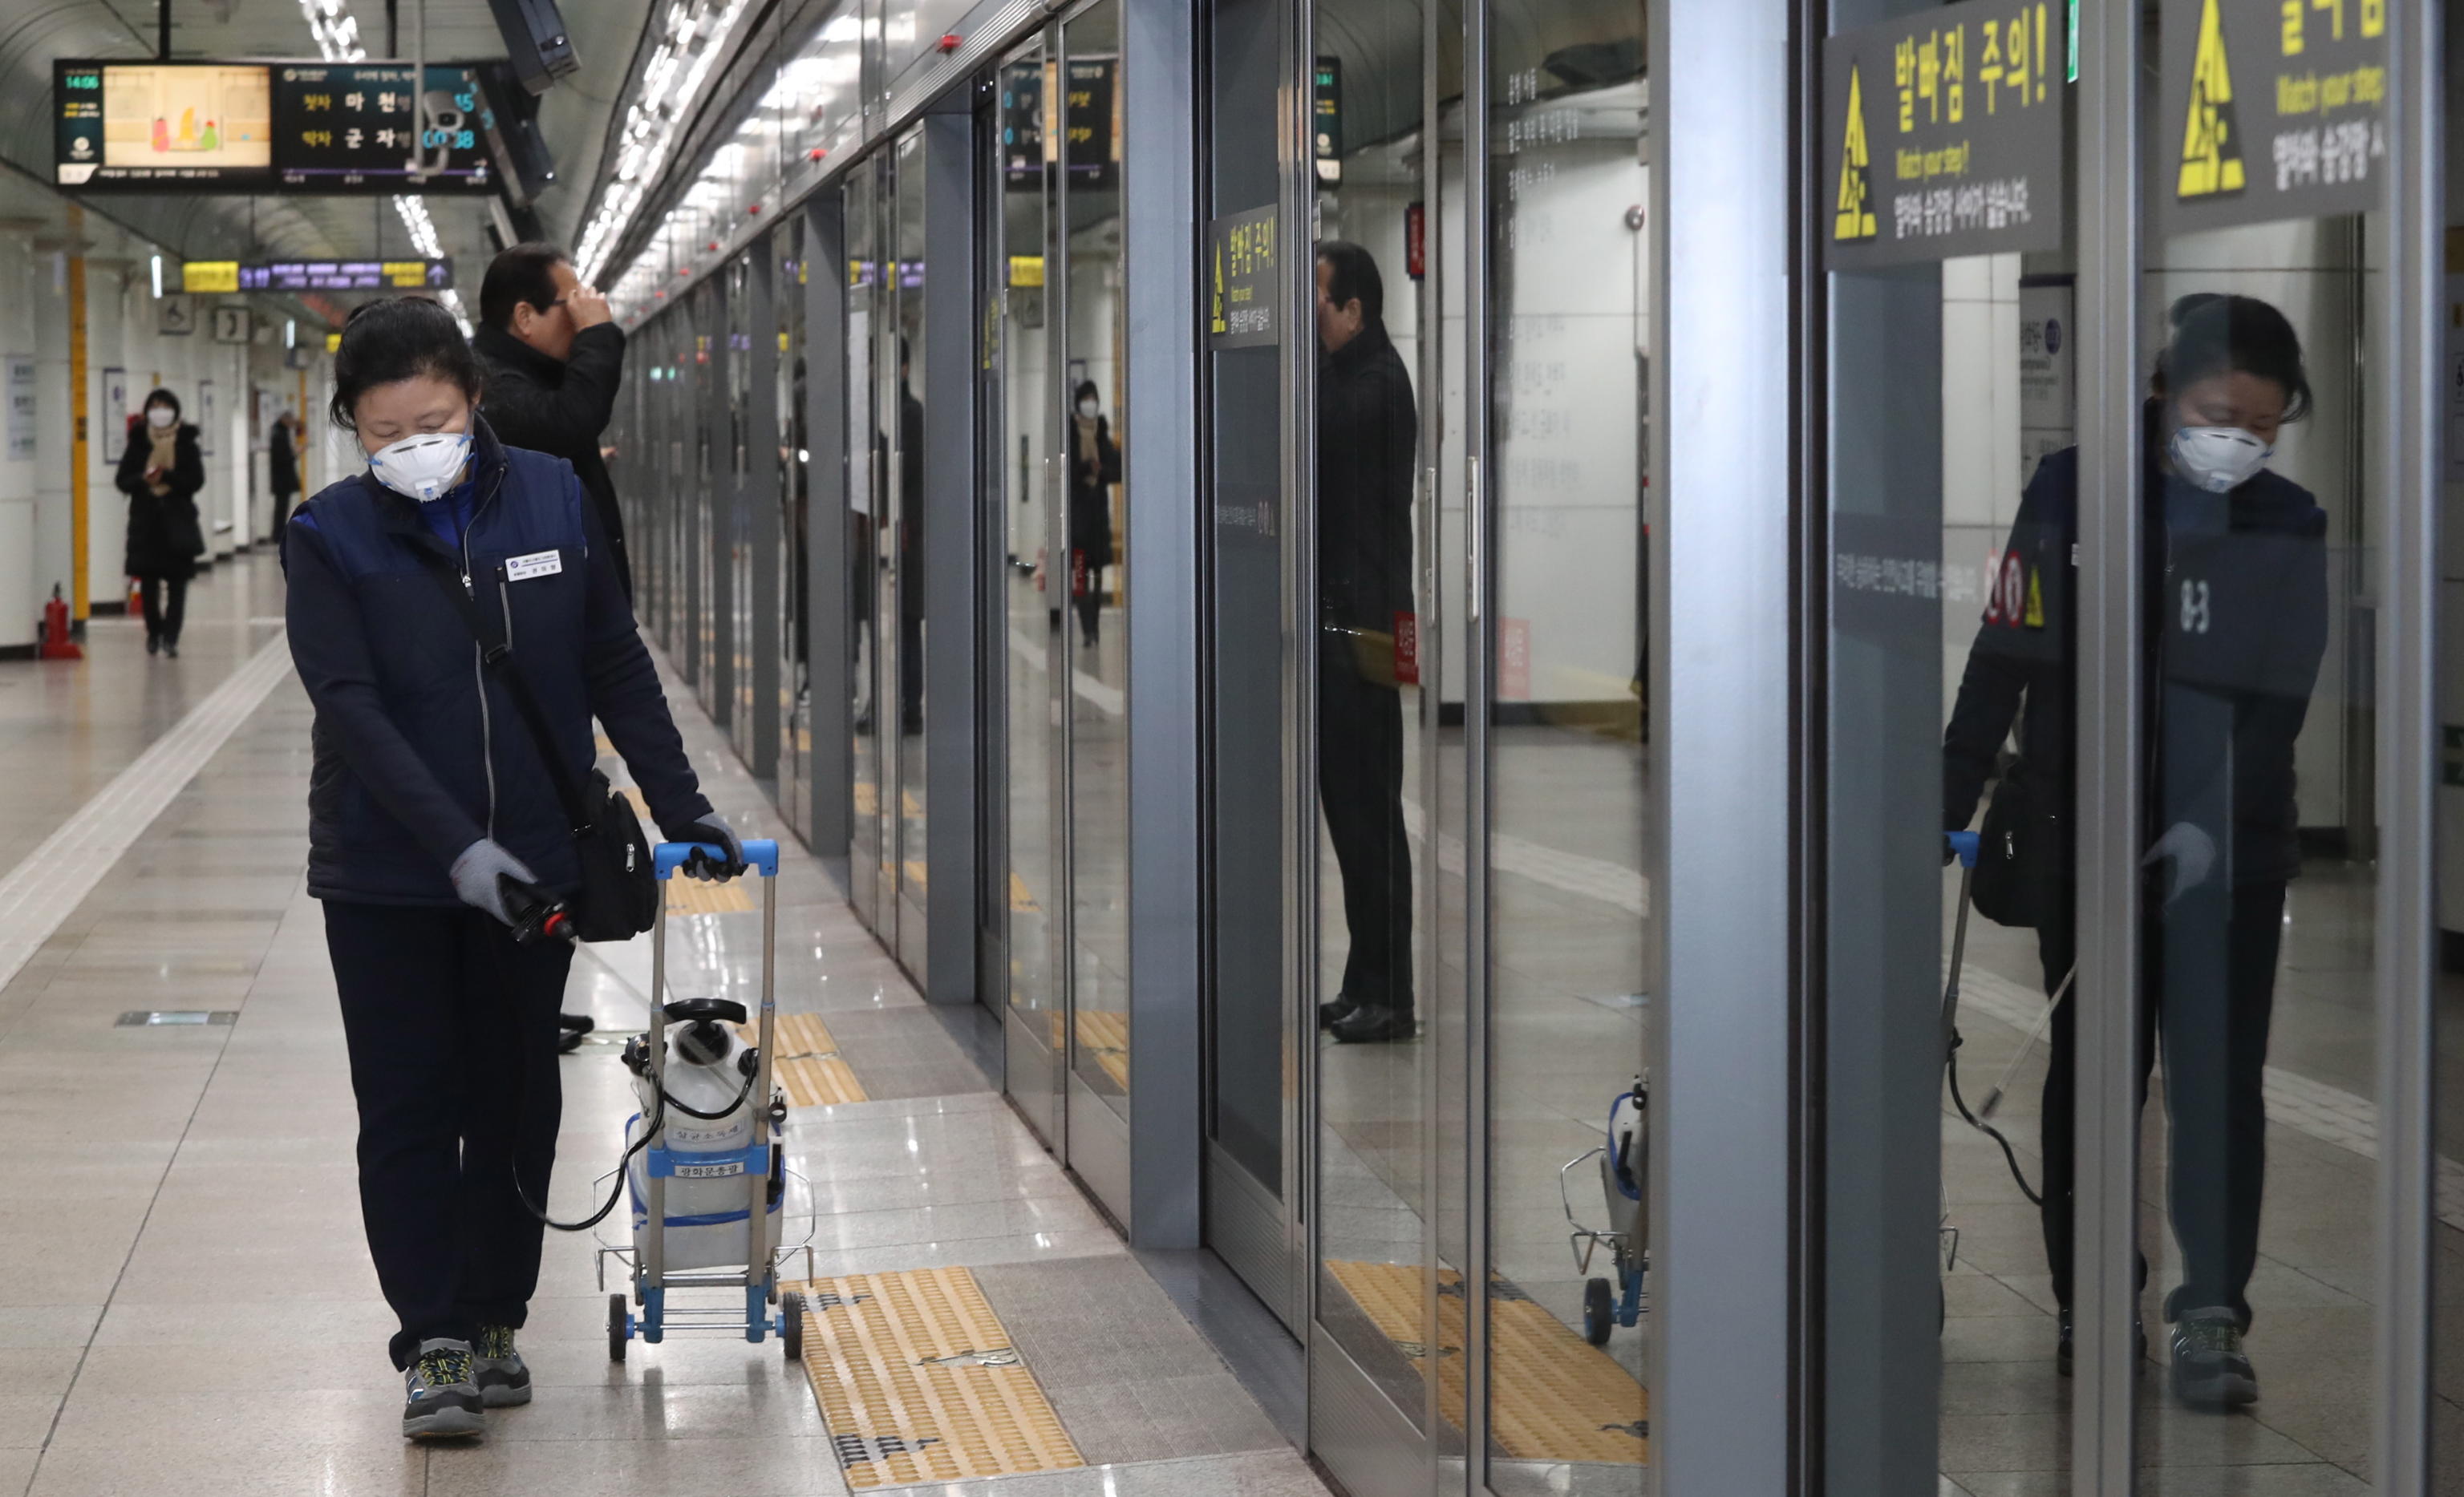 In Corea del Sud i lavoratori sterilizzano le strutture della metropolitana, come misura di prevenzione contro il coronavirus